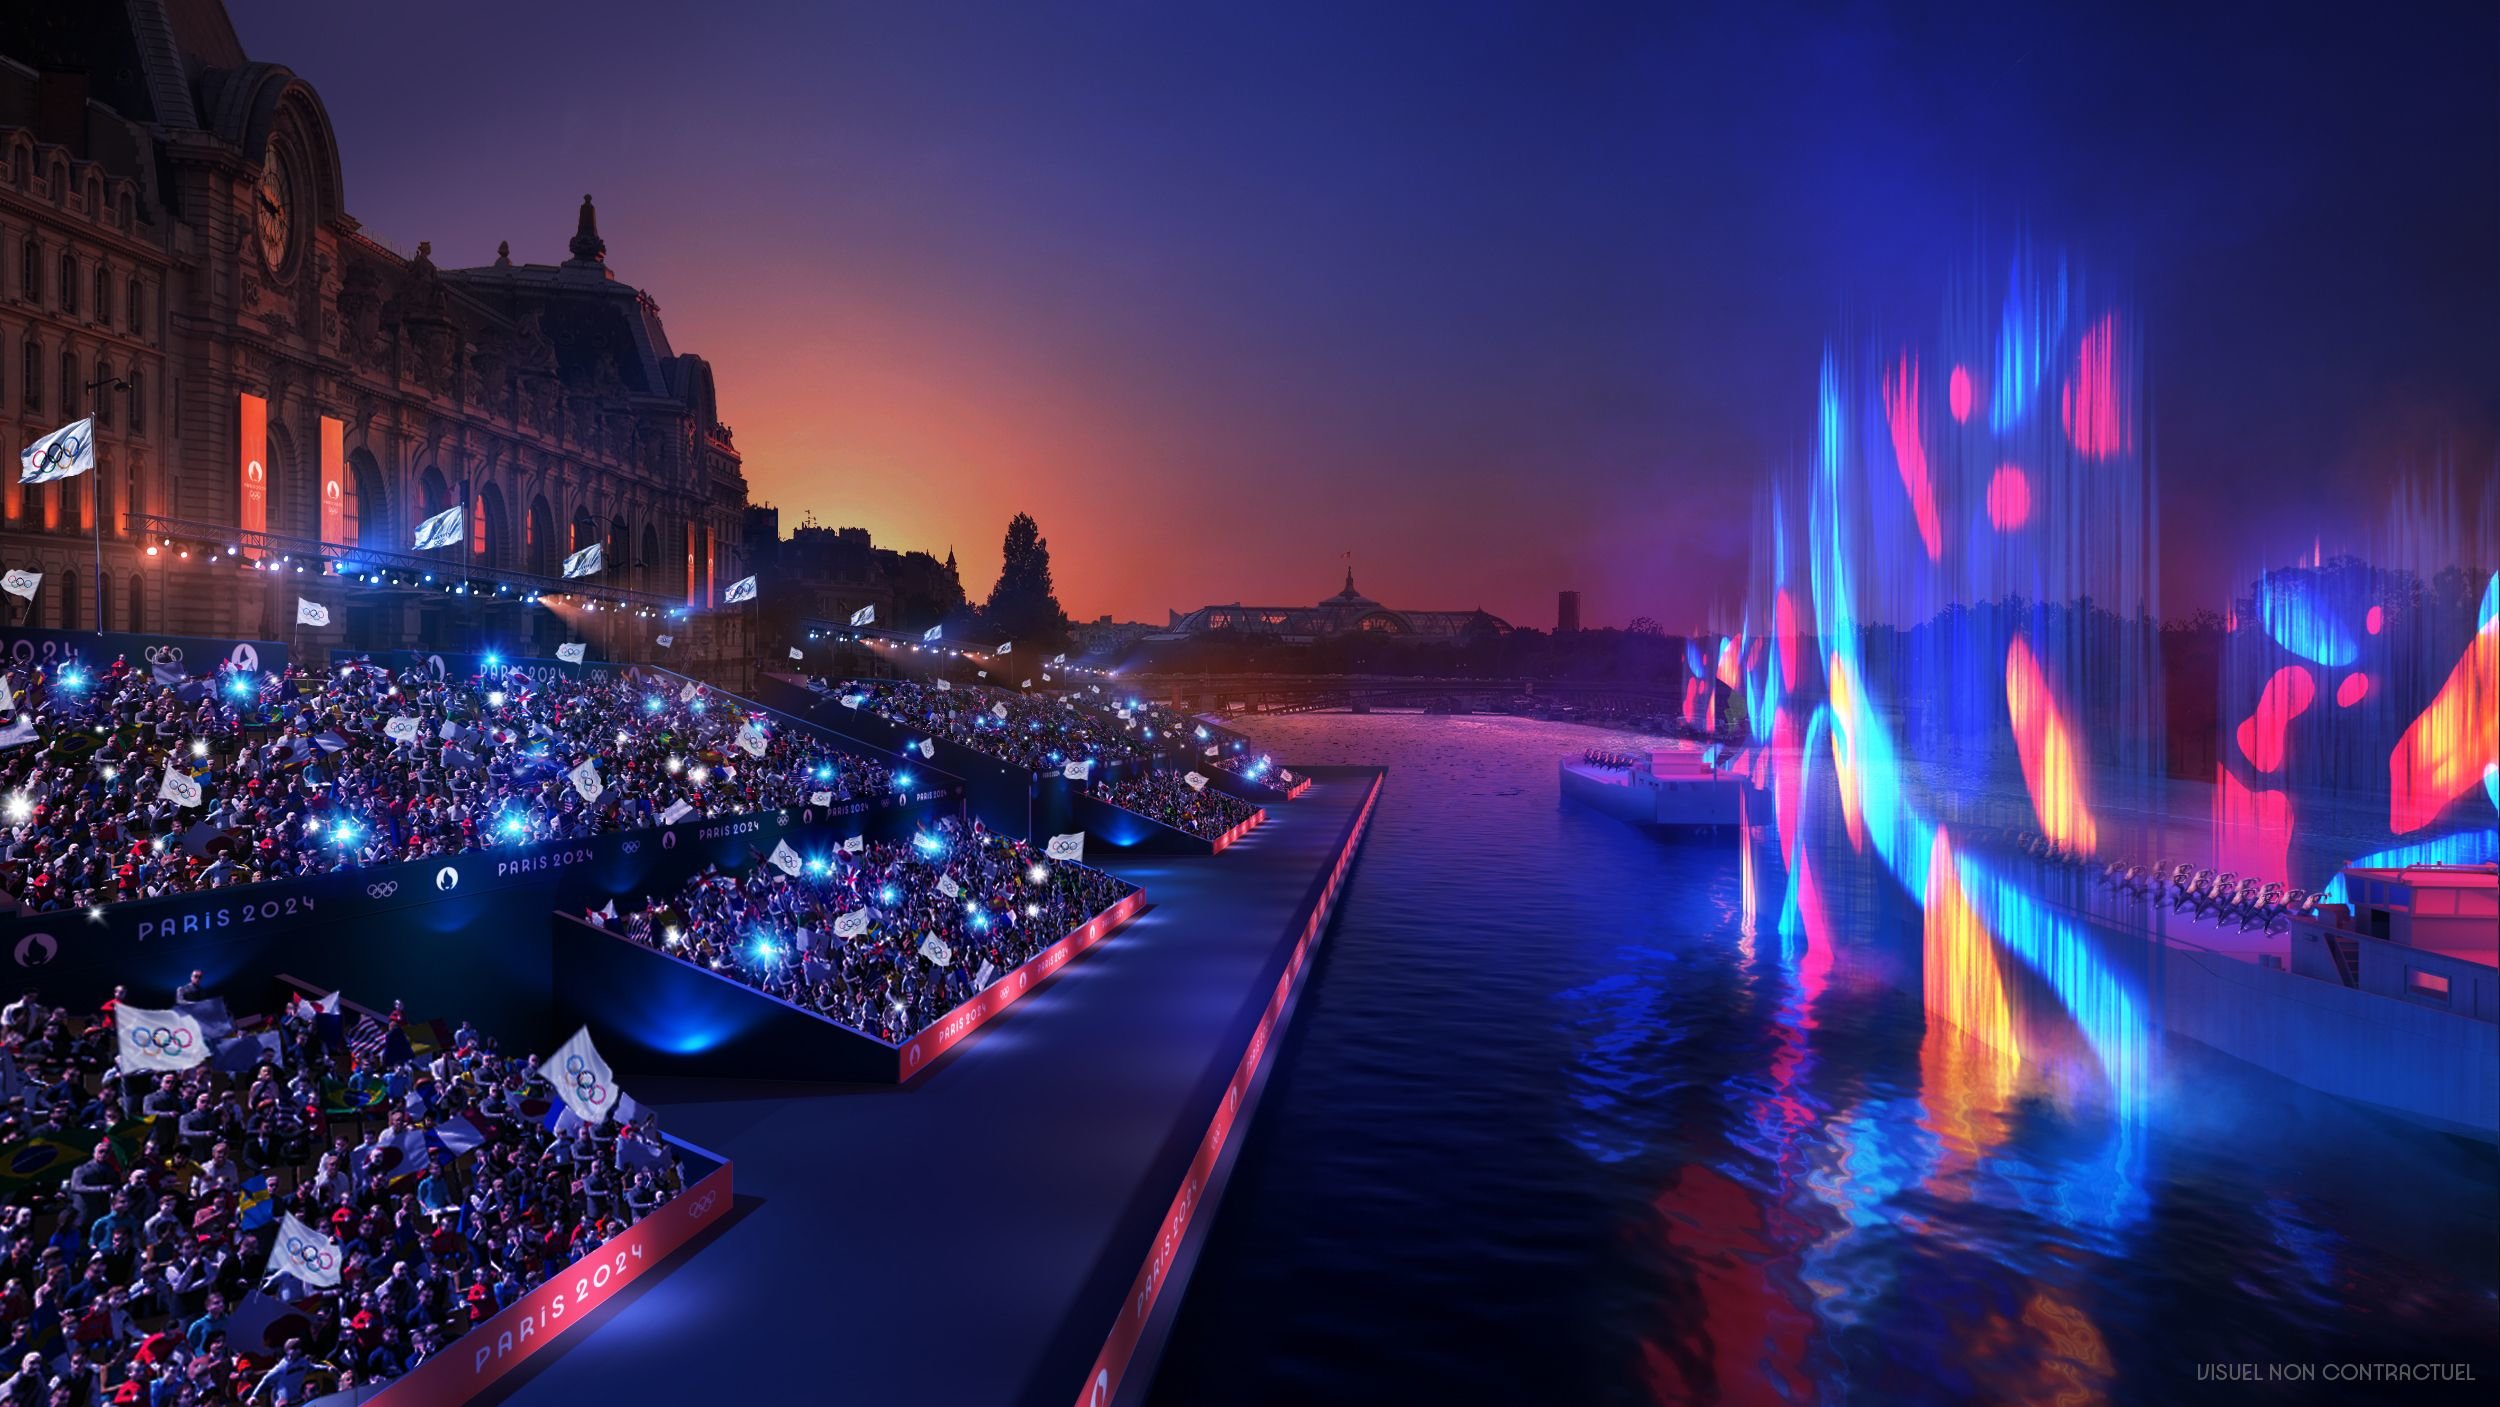 Les 55 000 personnes invitées par Paris à la cérémonie d'ouverture seront réparties entre quinze zones de tailles variables au niveau des quais hauts de la Seine. (Illustration) Thomas Boivin